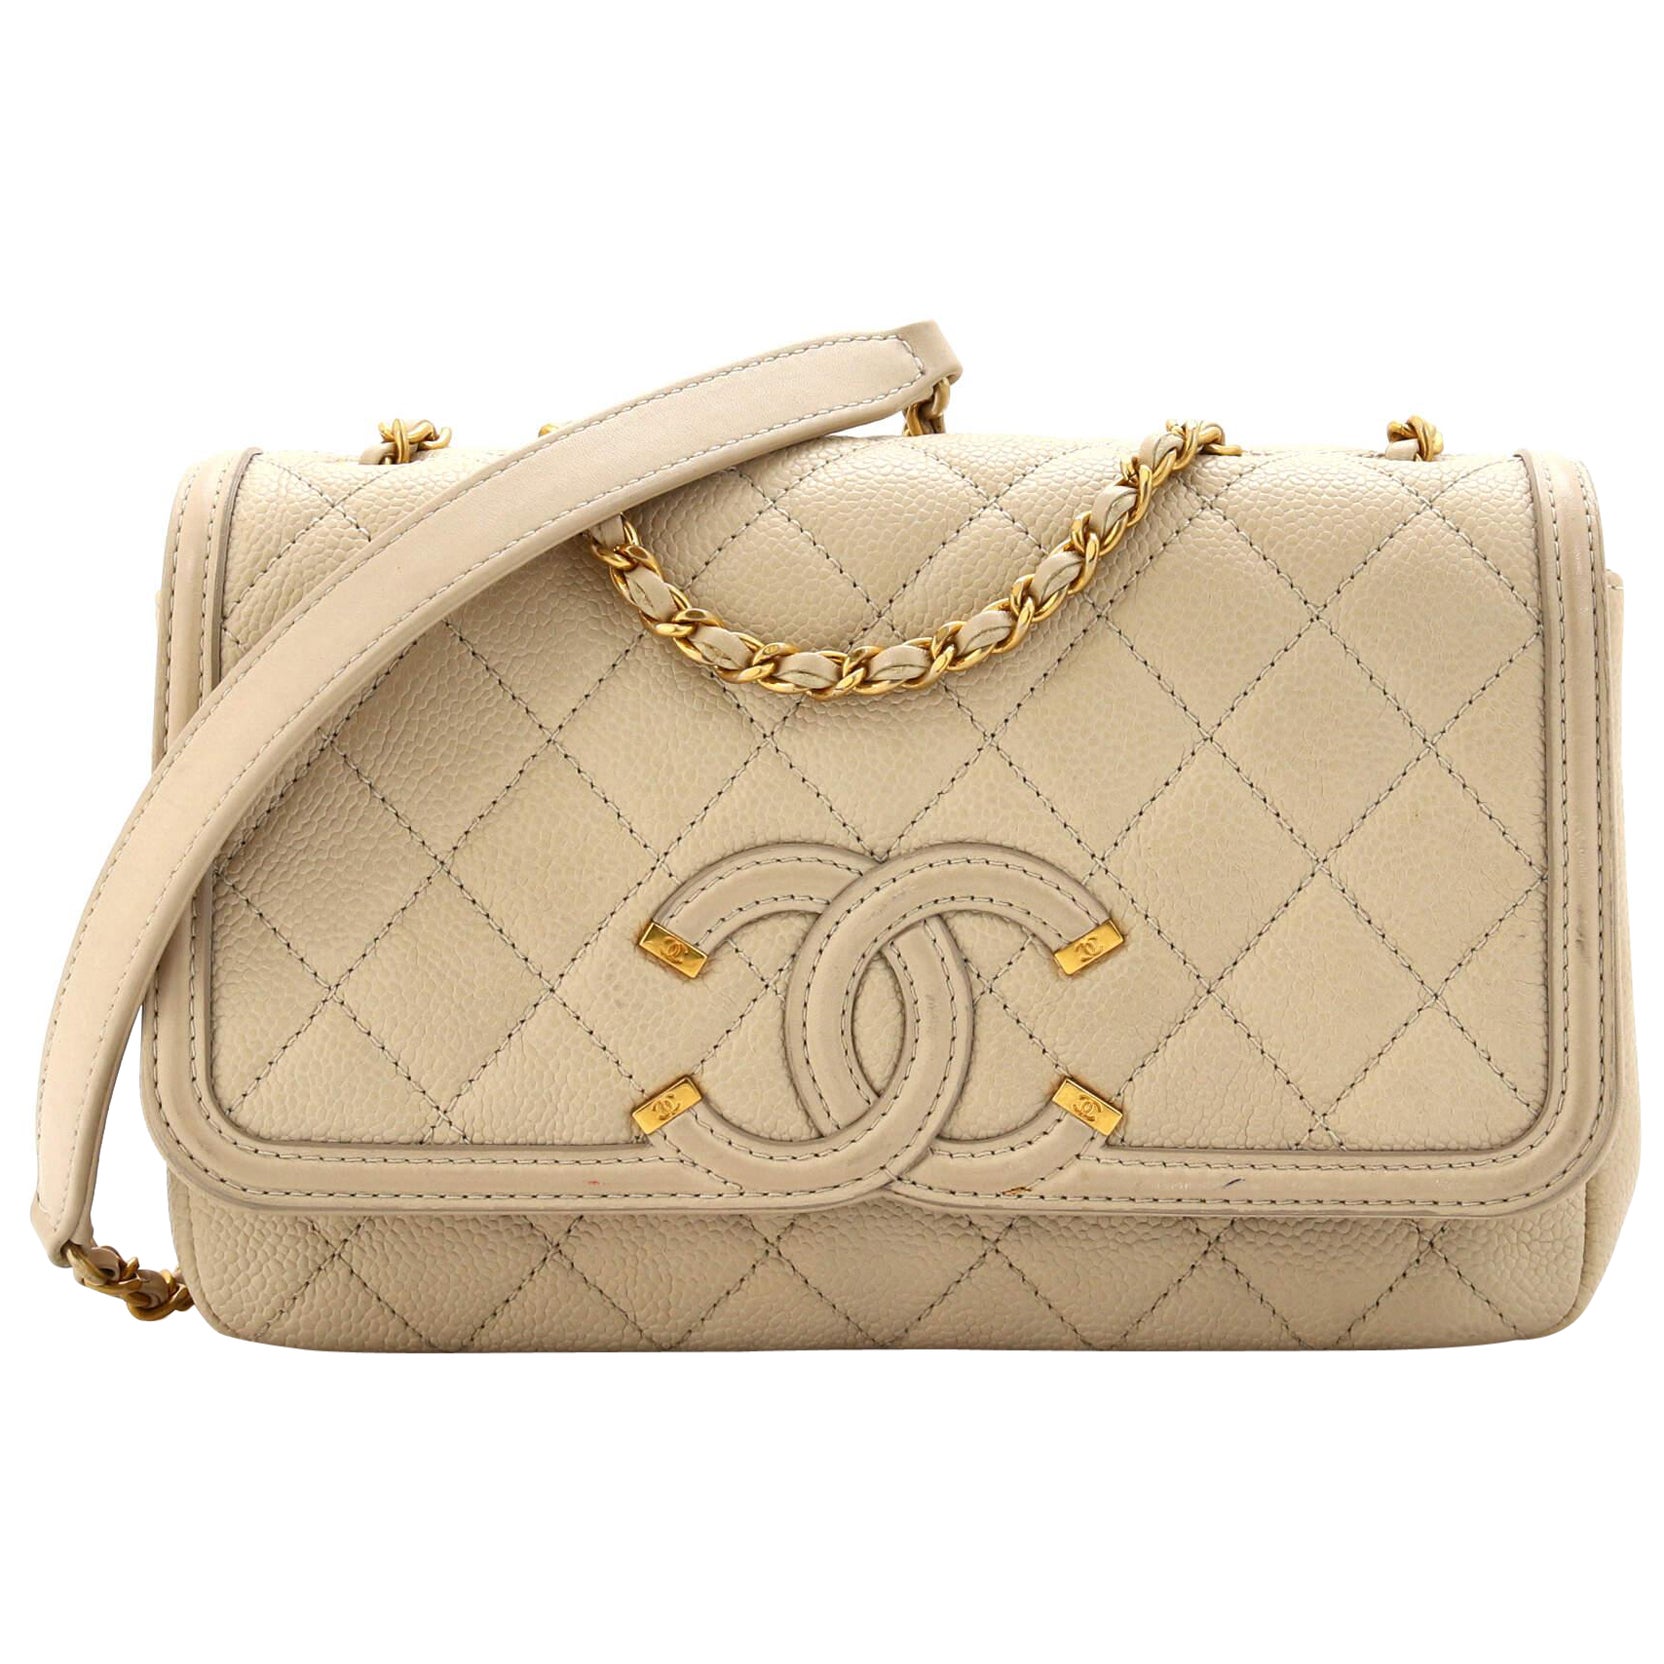 Chanel Filigree Handbag - 23 For Sale on 1stDibs